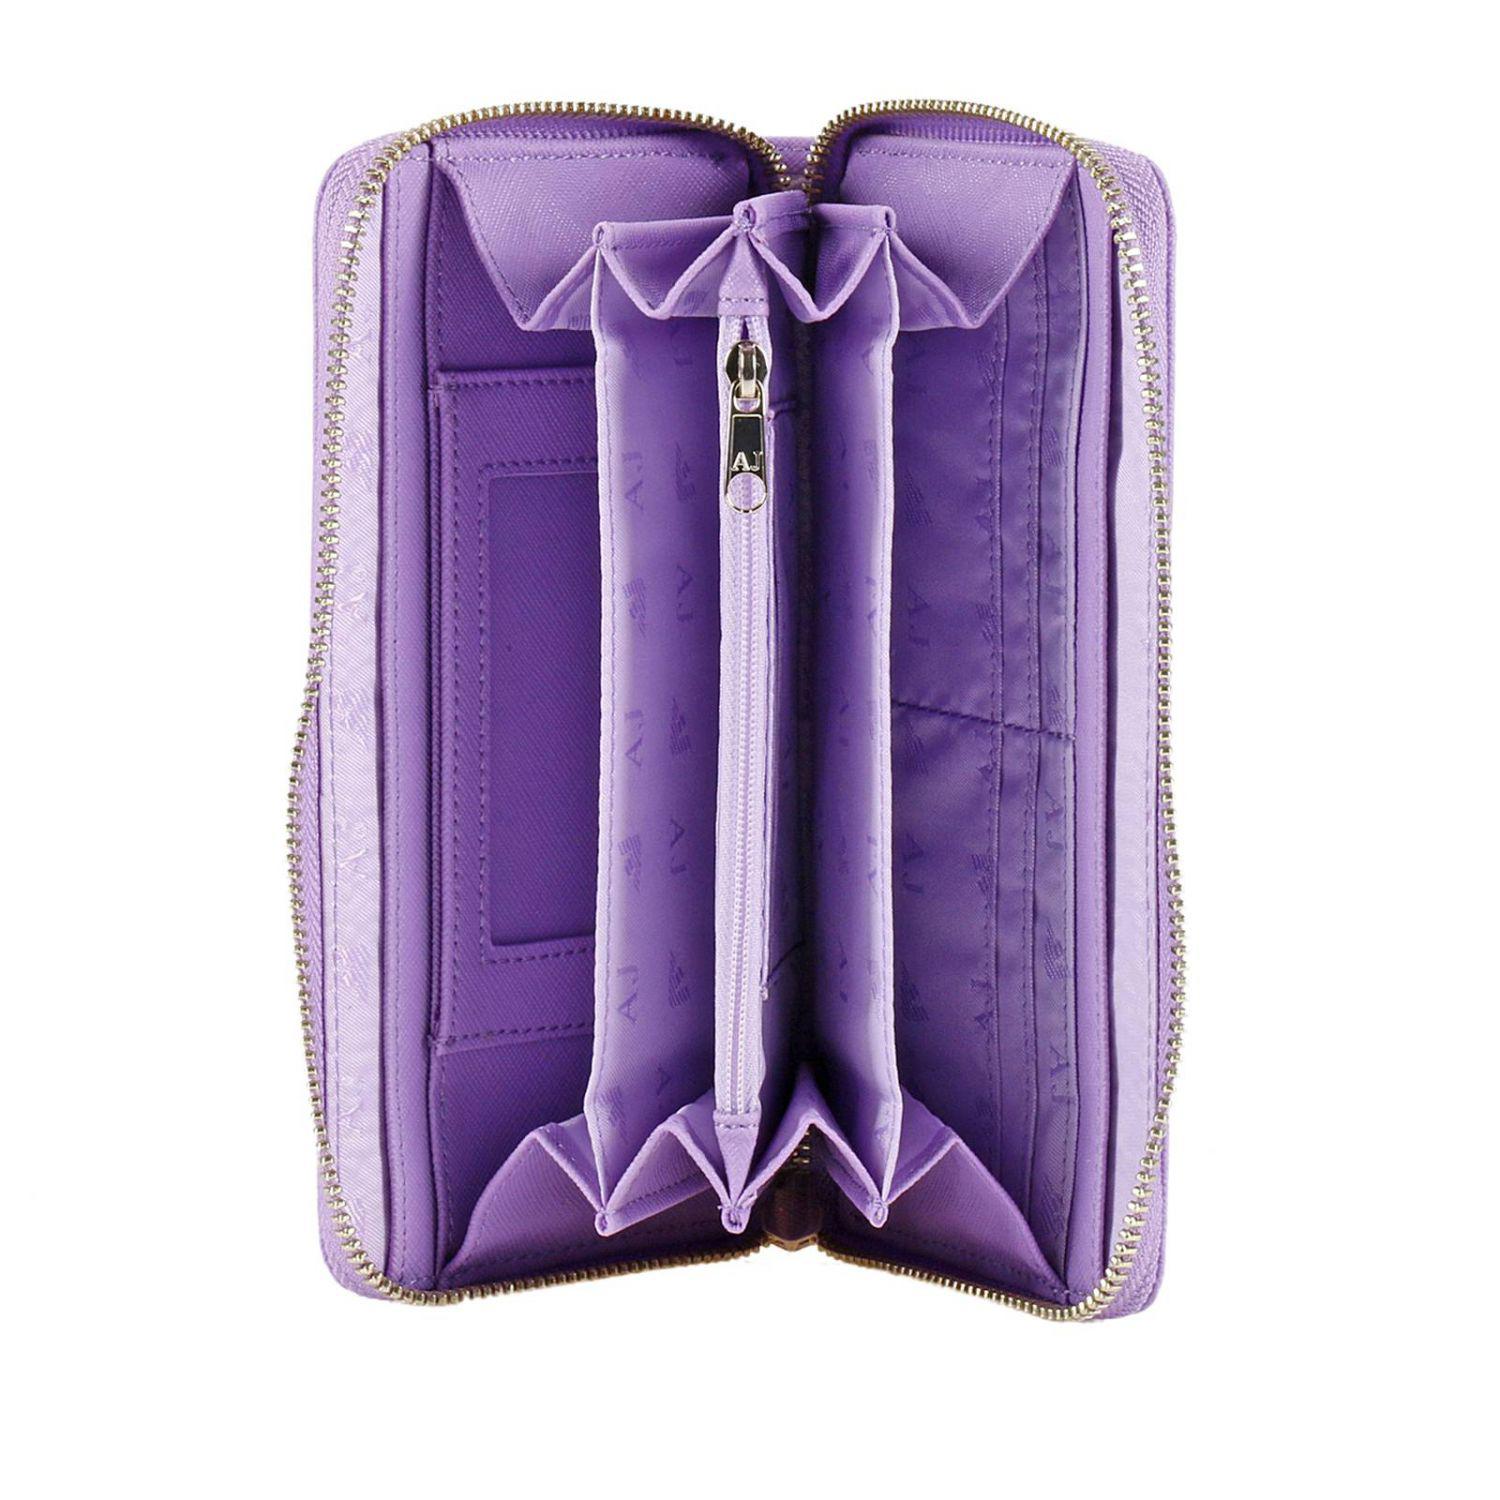 Armani Jeans Synthetic Wallet Women in Lilac (Purple) - Lyst